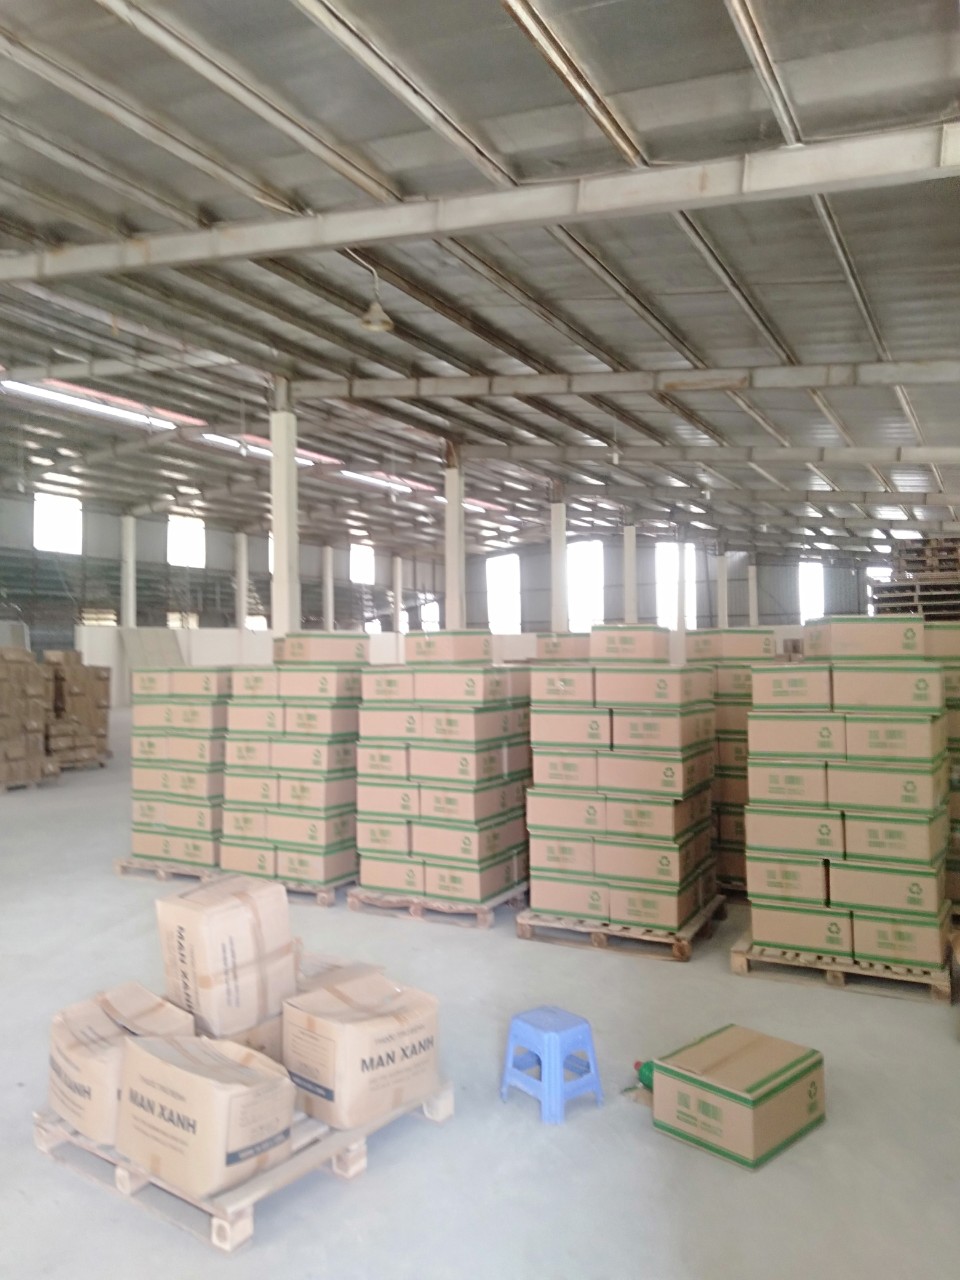 Sang nhượng 1 ha xưởng sản xuất giấy và bột giấy tại Hà Nội